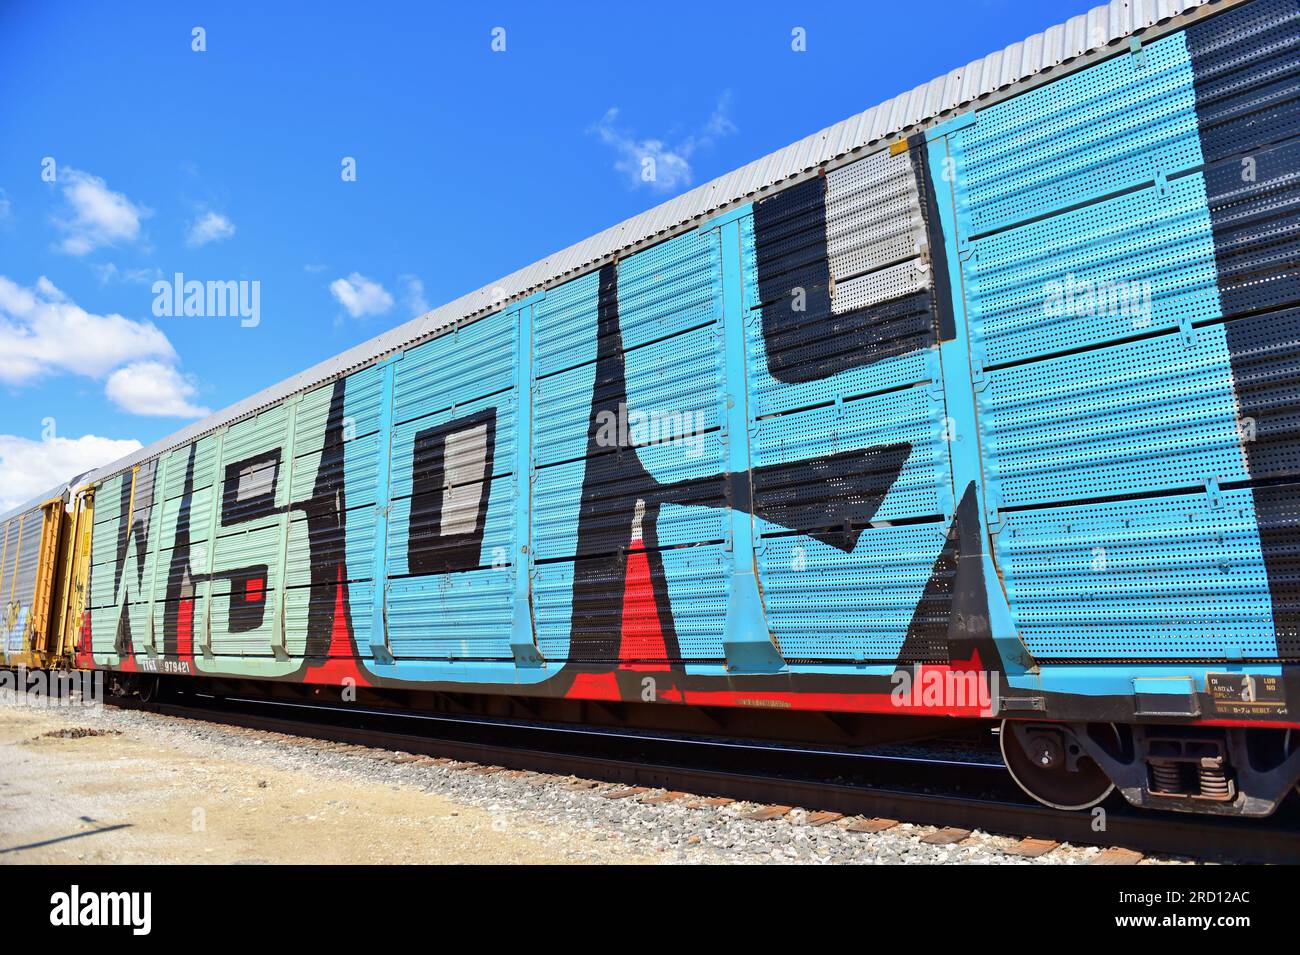 Franklin Park, Illinois, USA. Un'auto da trasporto su rack la cui proprietà non può più essere facilmente determinata a causa dei graffiti su larga scala. Foto Stock